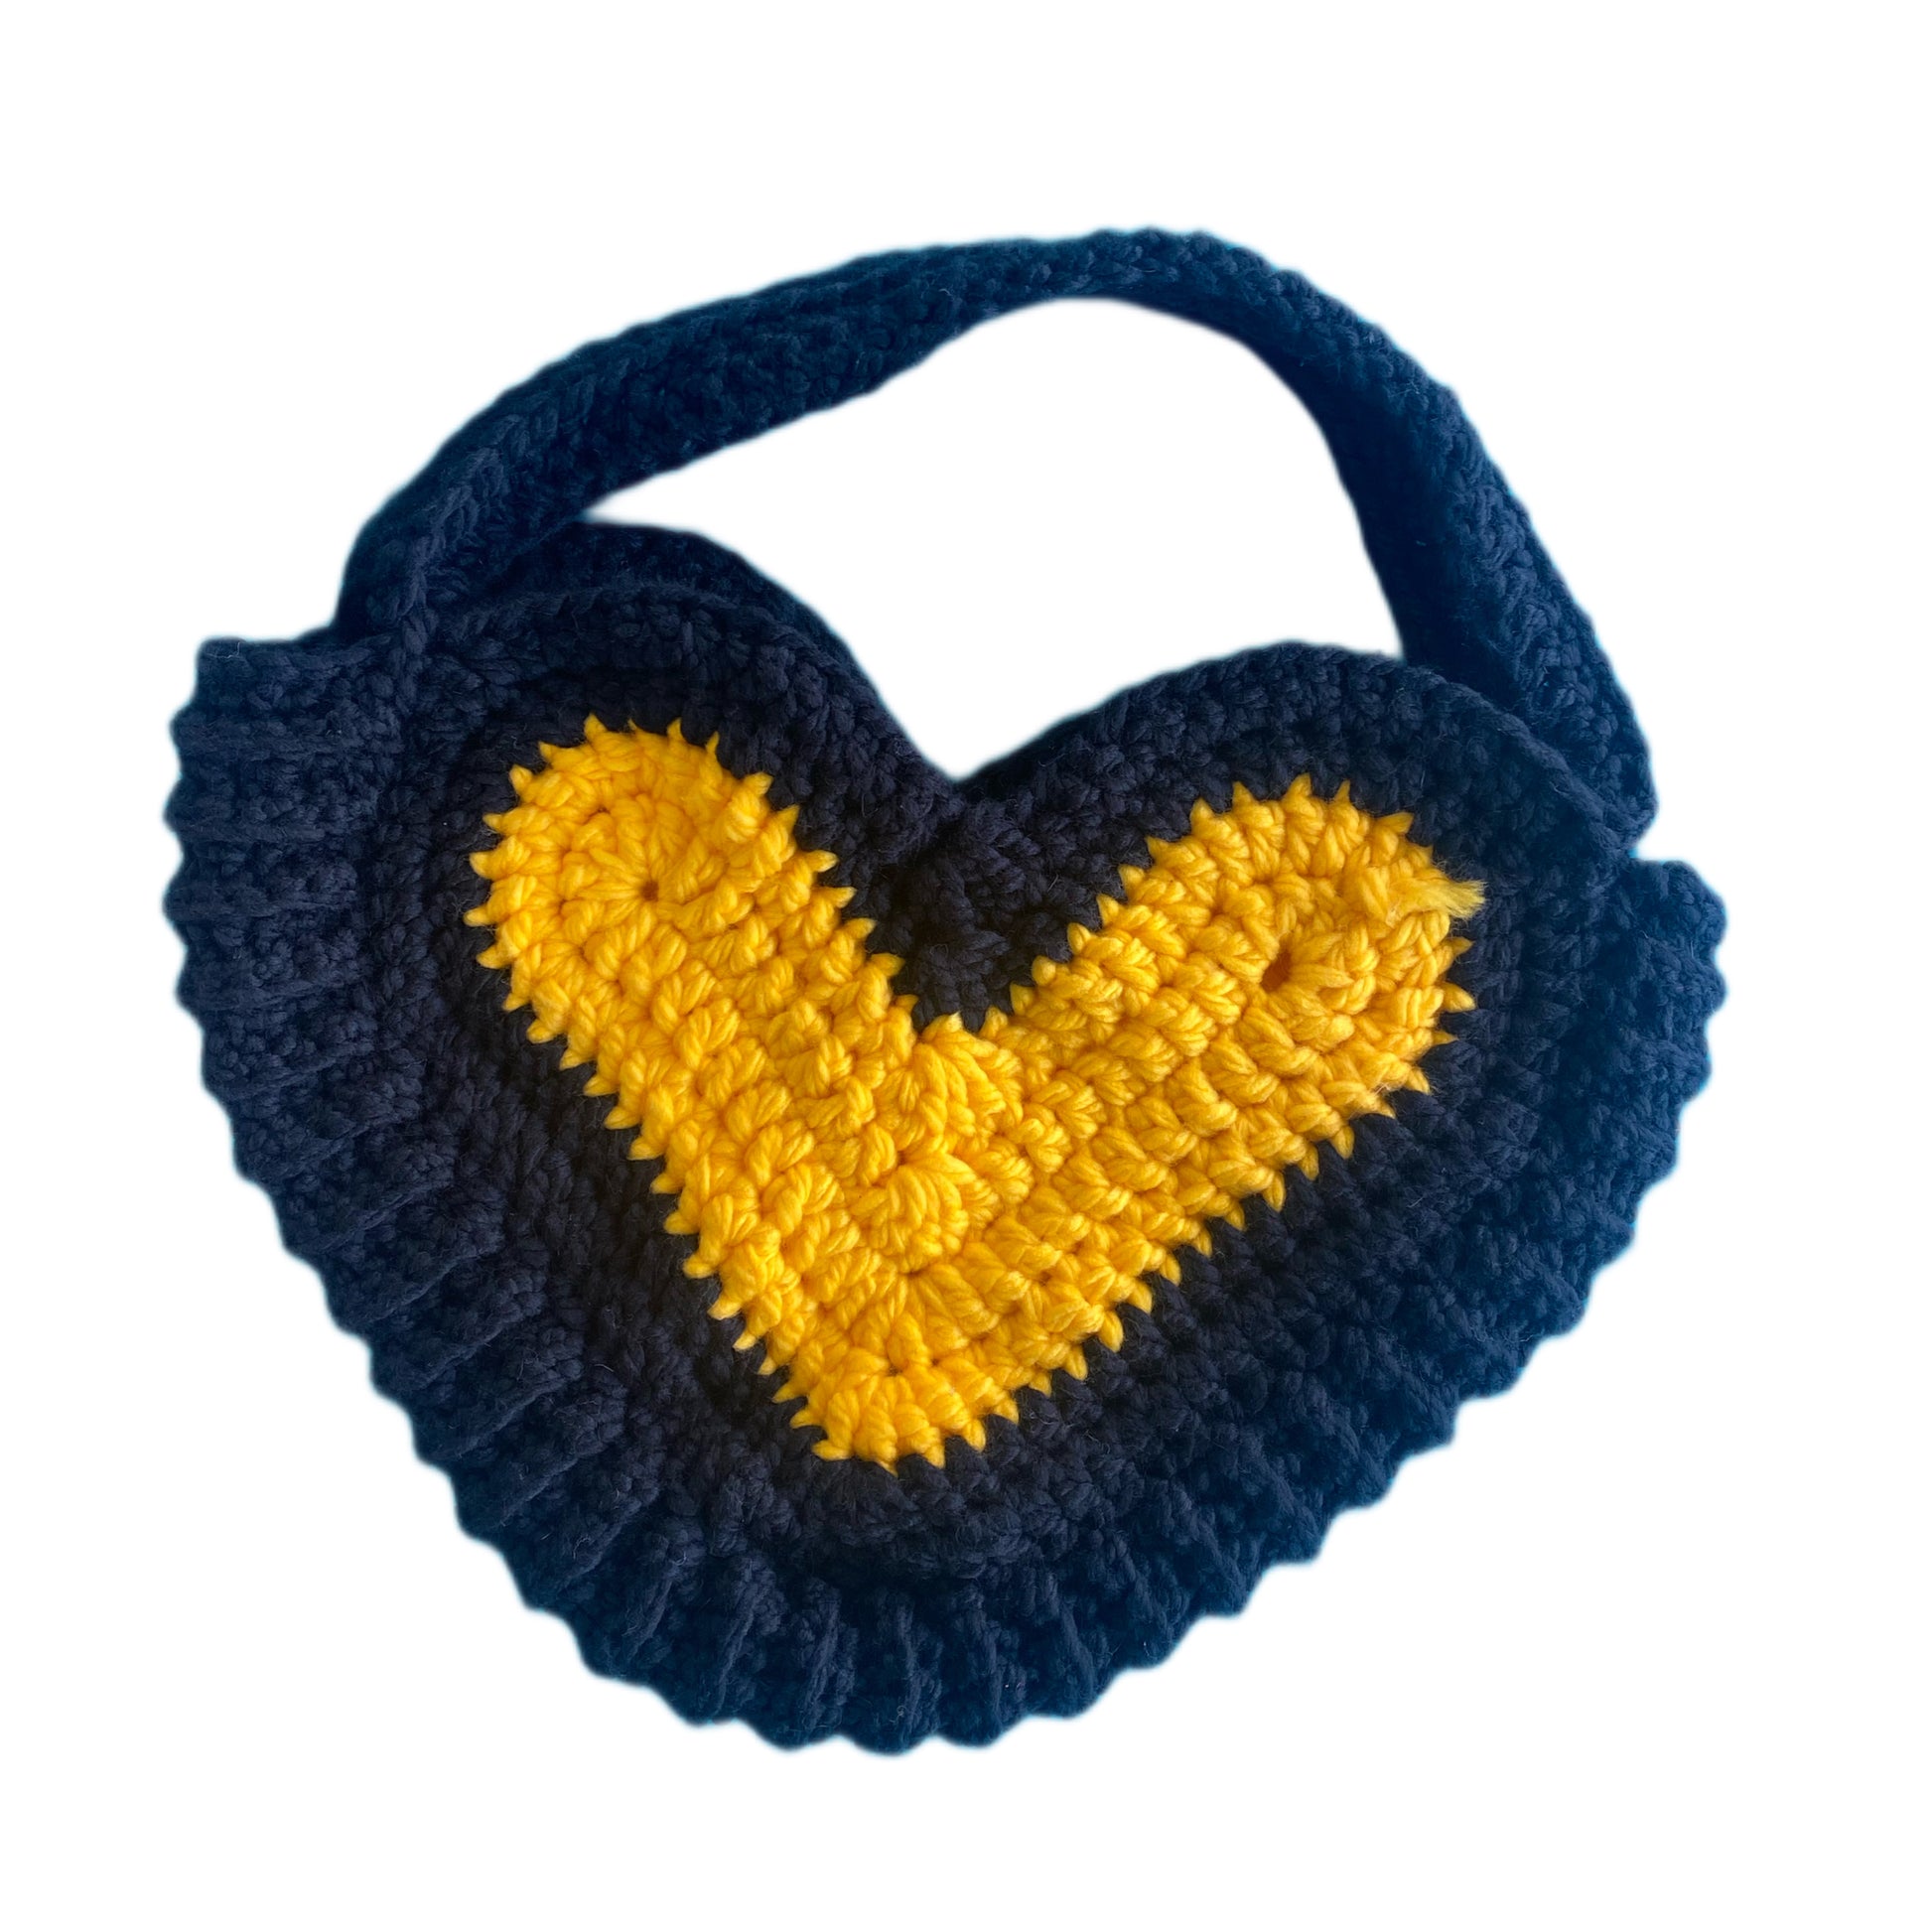 Crochet Heart Tote